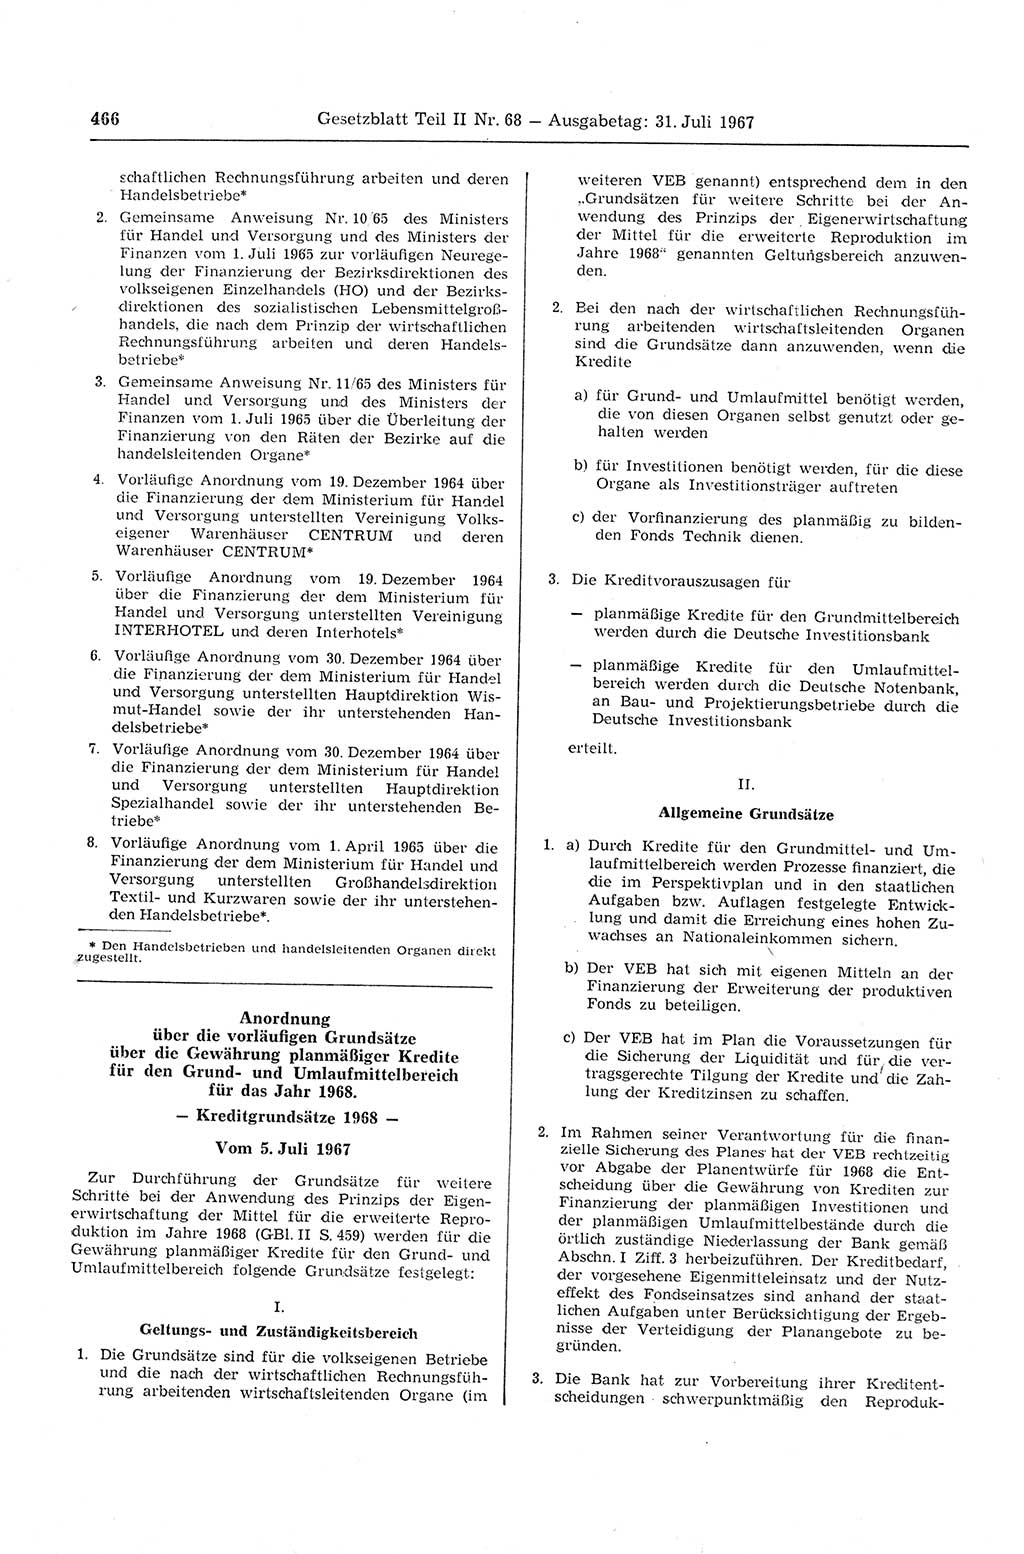 Gesetzblatt (GBl.) der Deutschen Demokratischen Republik (DDR) Teil ⅠⅠ 1967, Seite 466 (GBl. DDR ⅠⅠ 1967, S. 466)